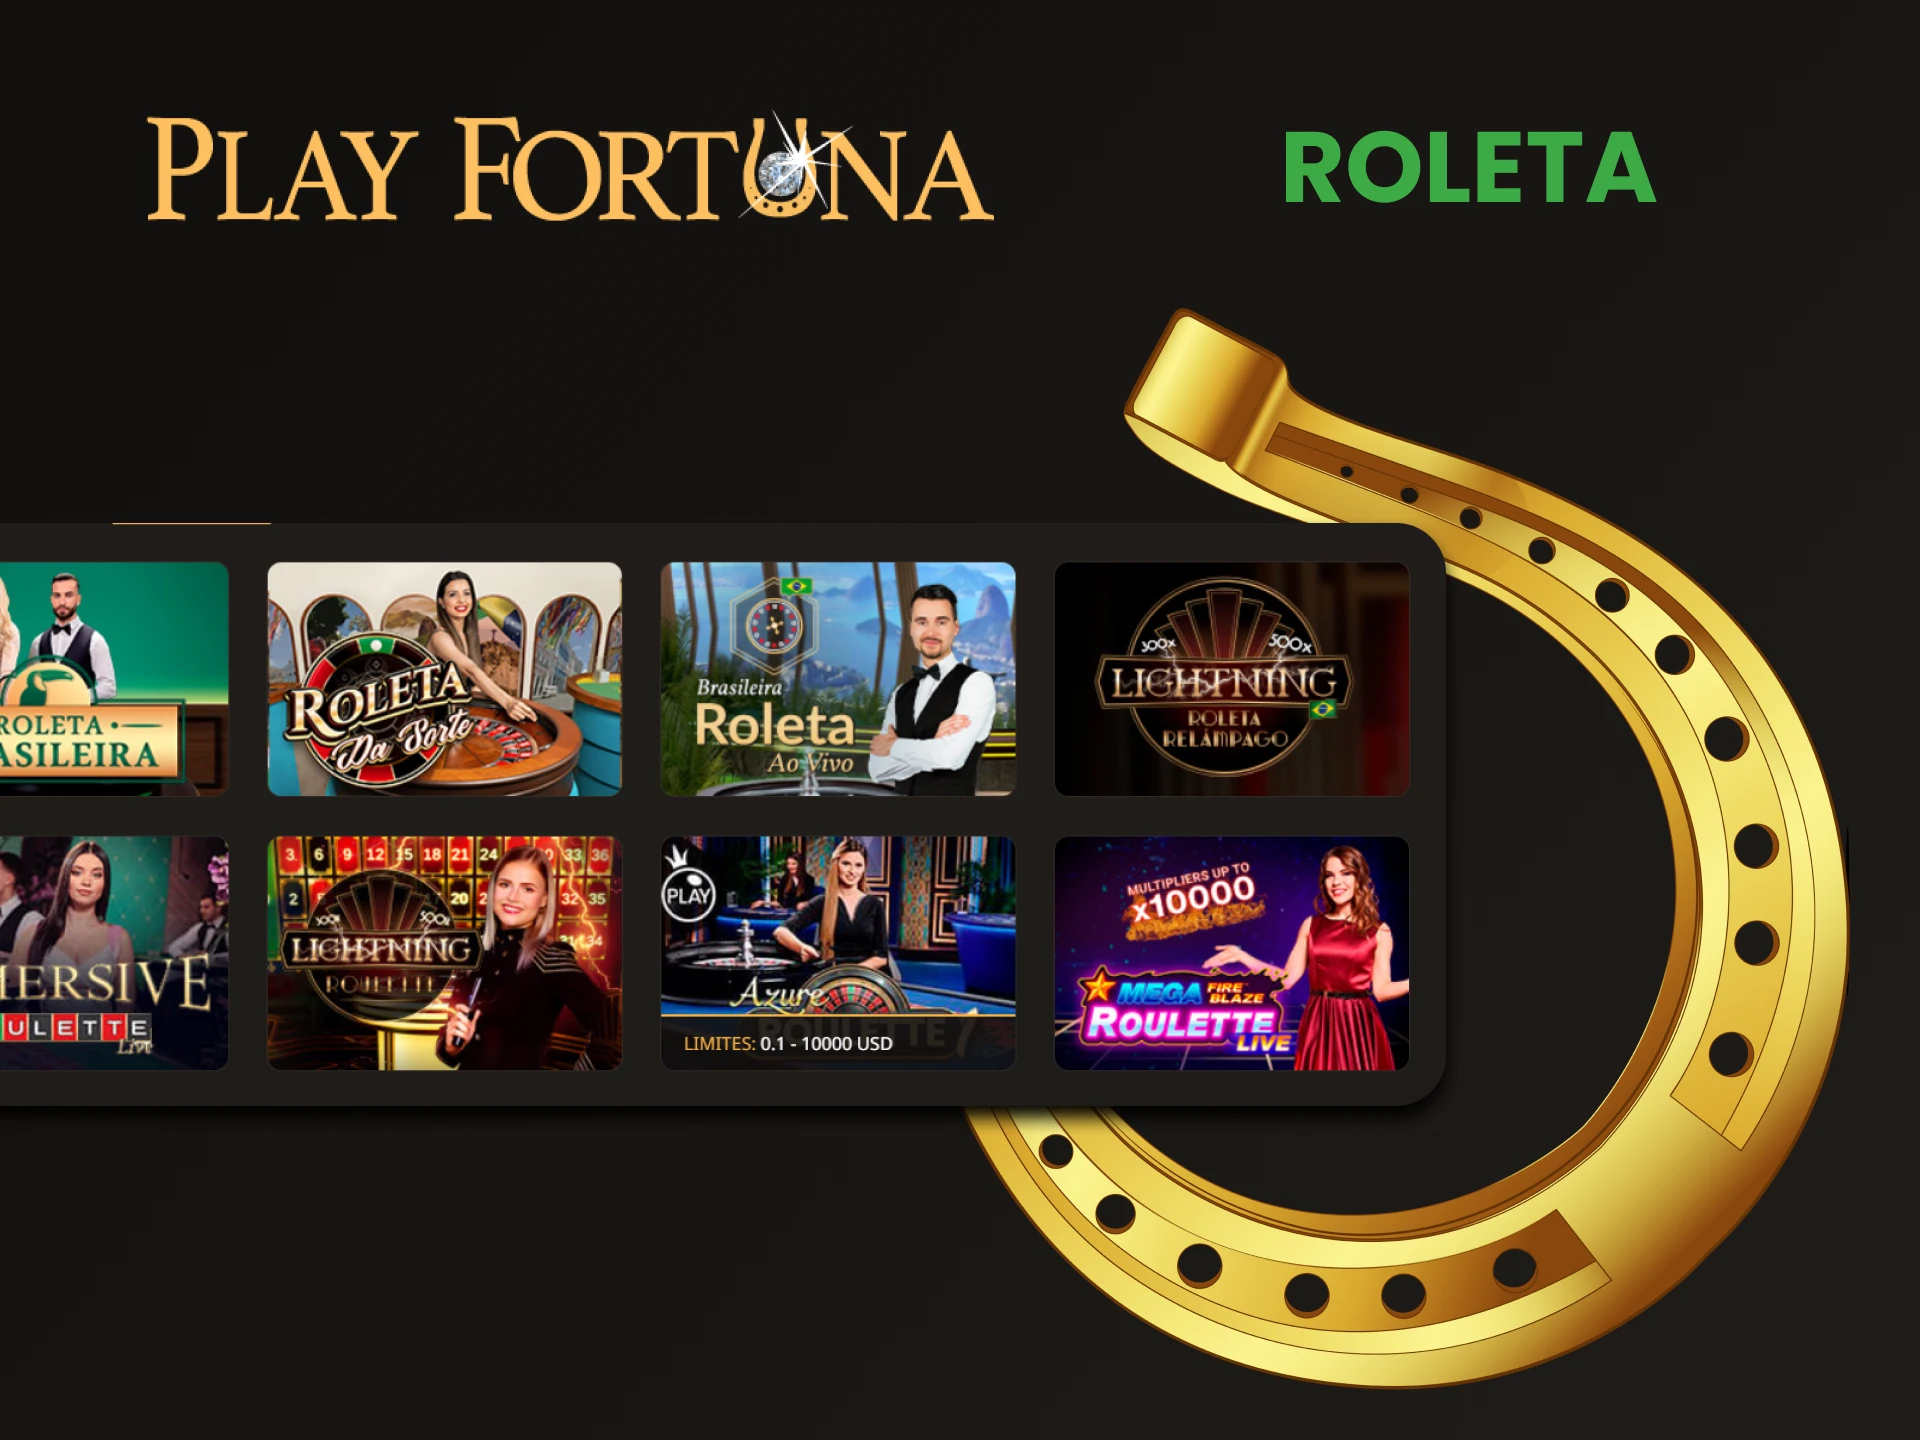 Escolha Roleta na seção de cassino ao vivo do Play Fortuna.